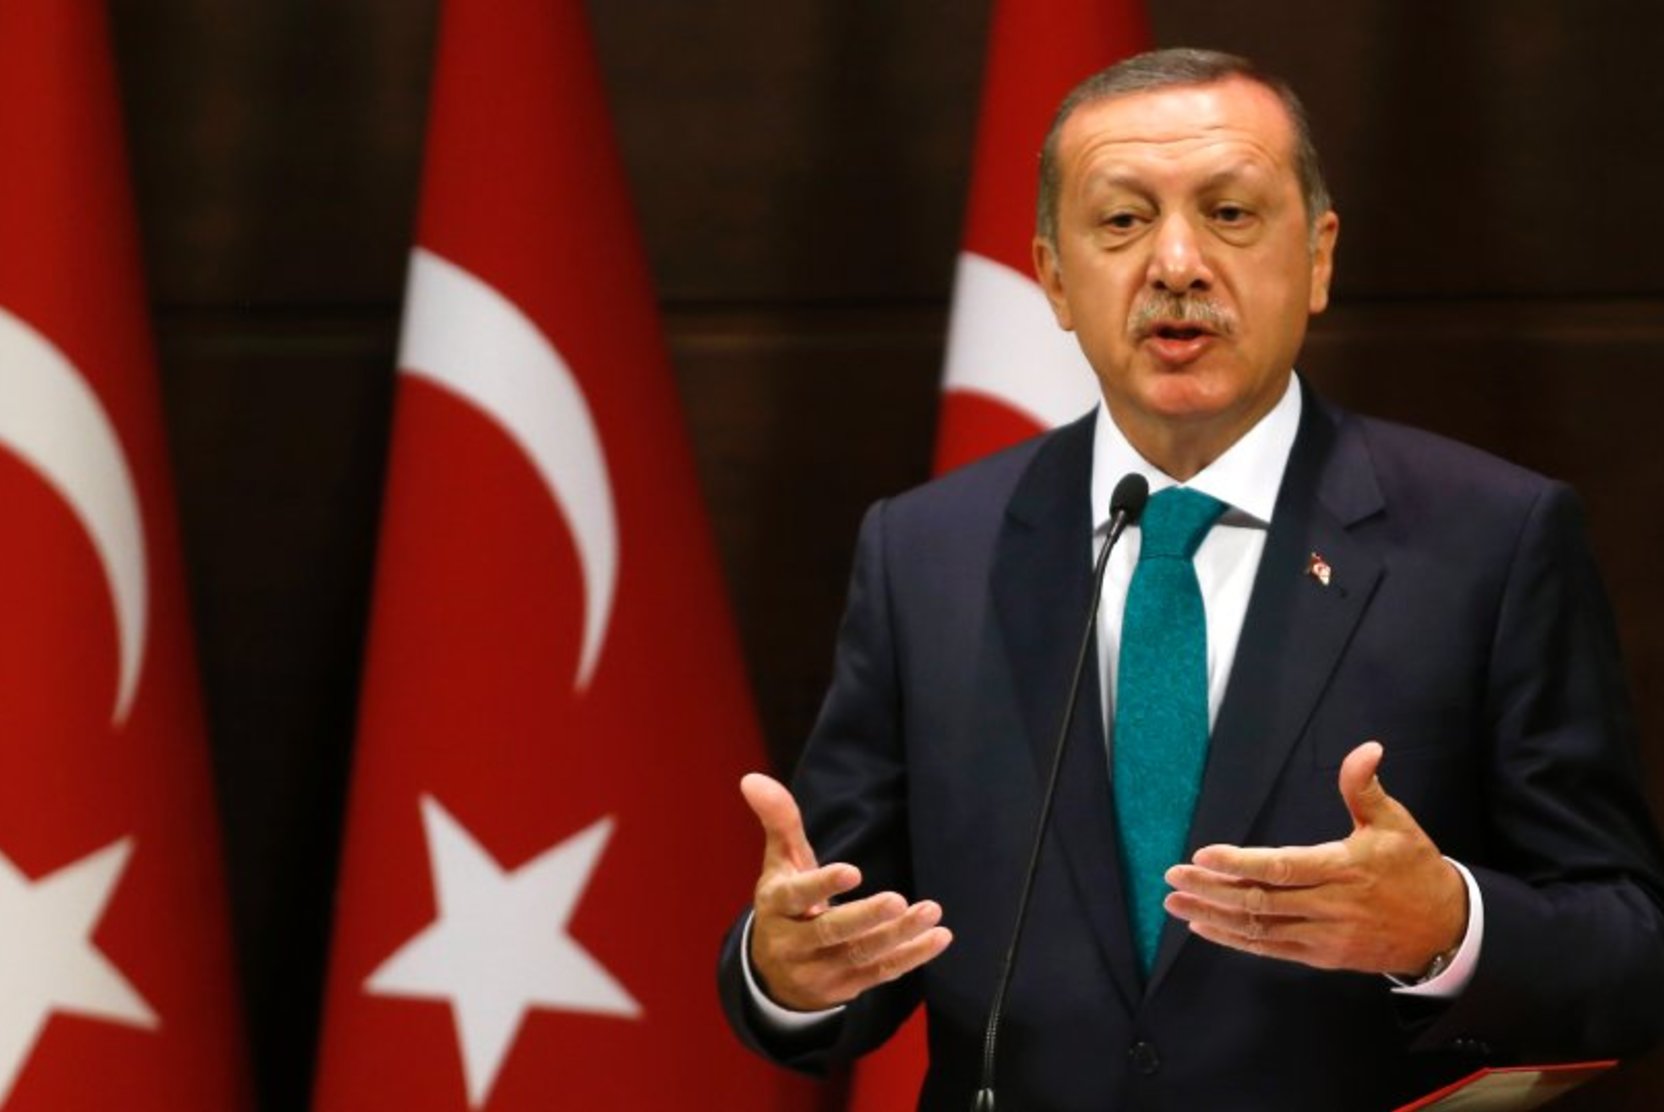 Эрдоган: Турция не изменит позицию по Швеции и Финляндии в НАТО